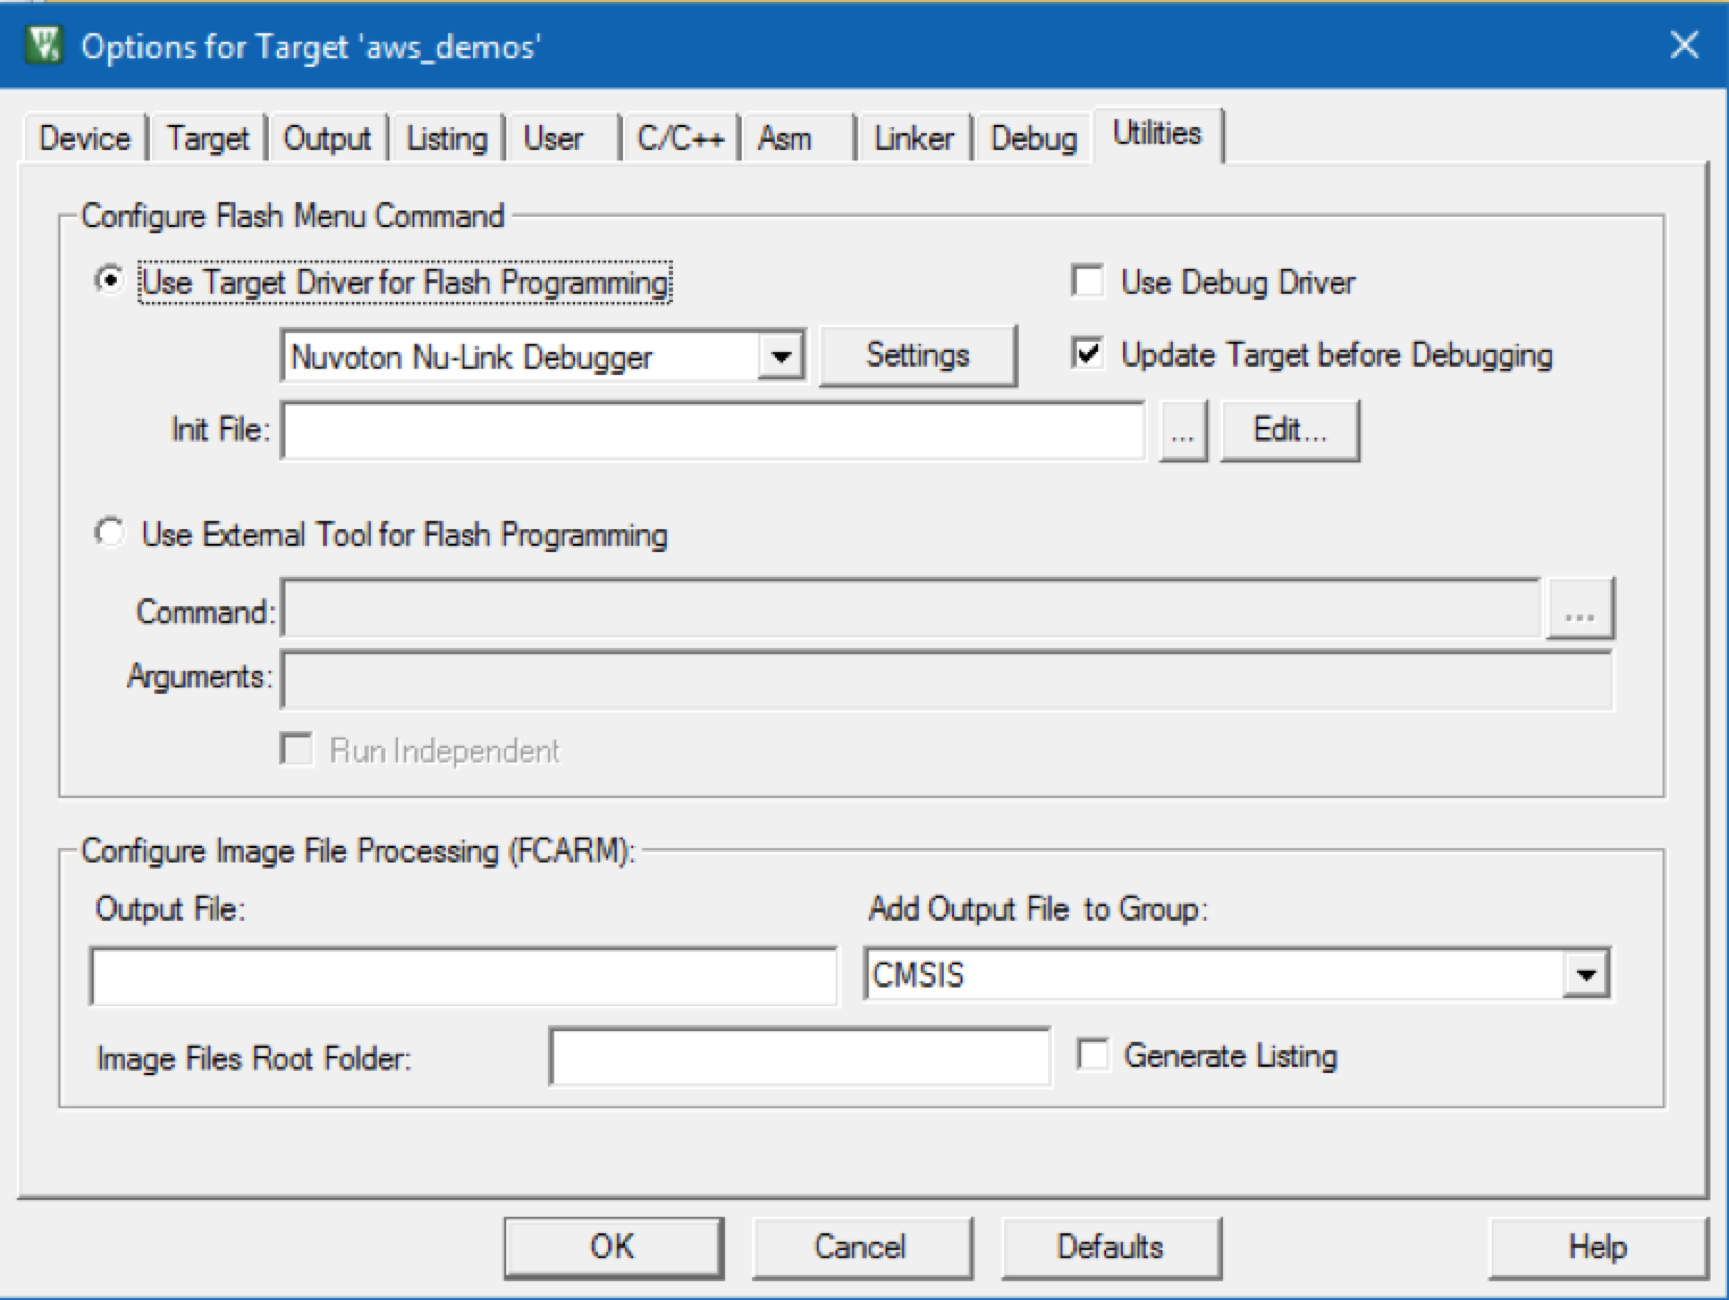 Janela de opções mostrando as configurações para programação flash, depuração e processamento de arquivos de saída.